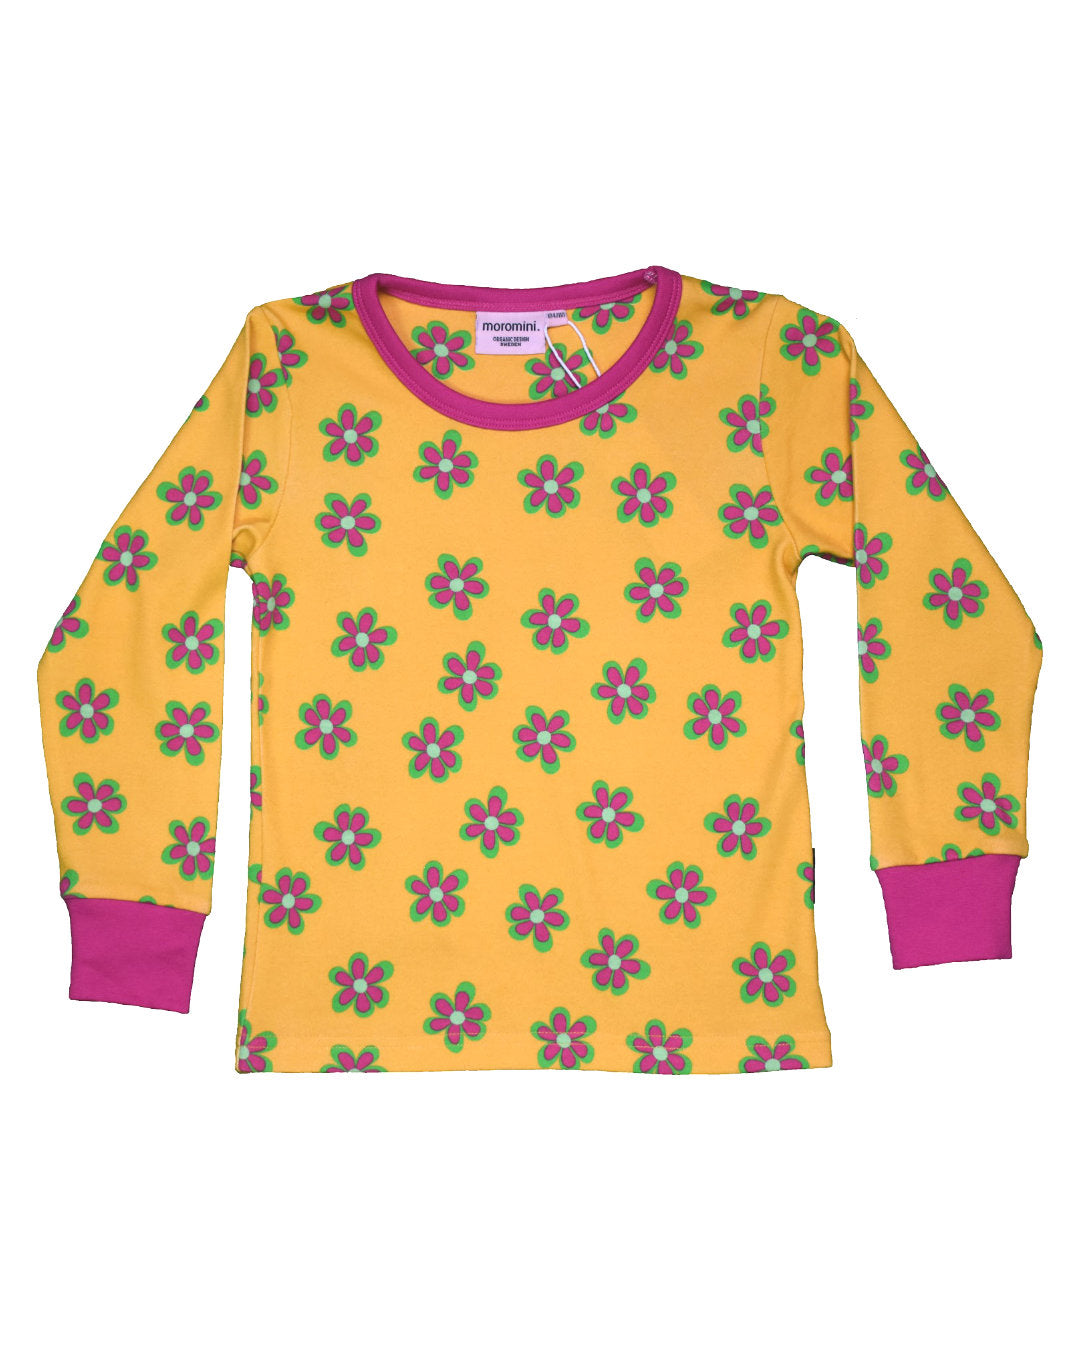 Shirt in senfgelb mit Blumen für Kinder aus Biobaumwolle von moromini